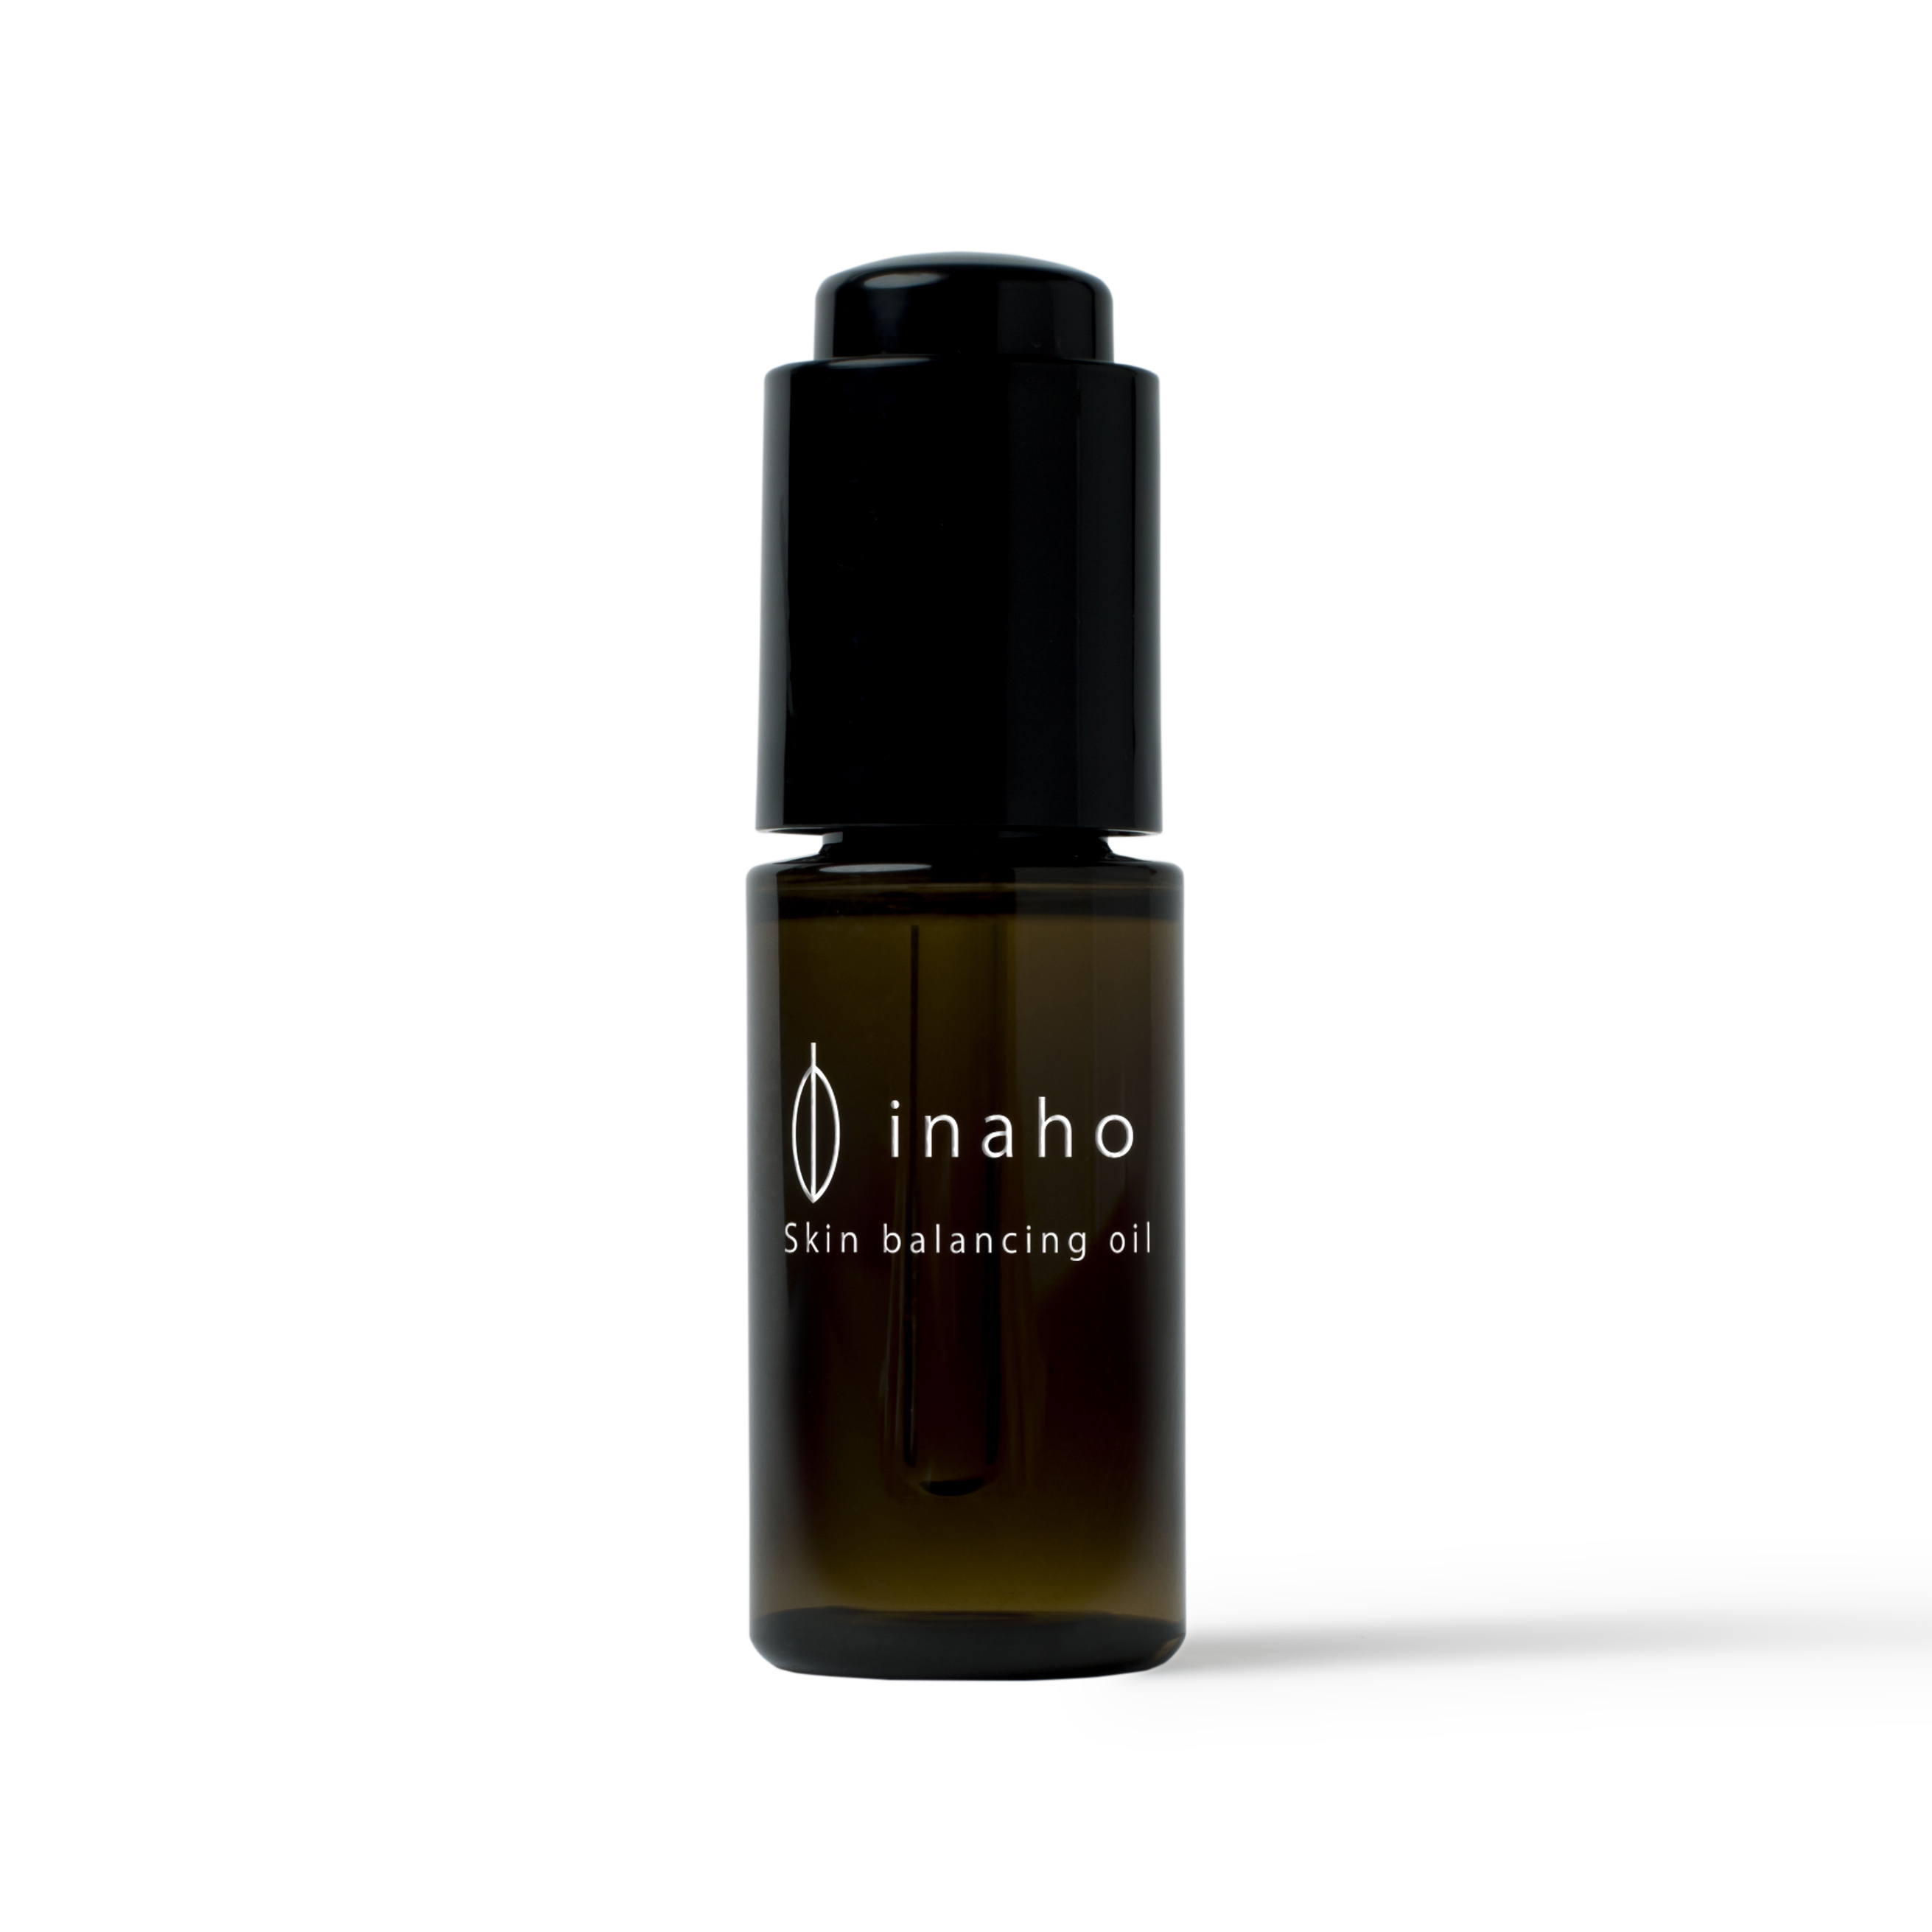 inaho skin balancing oil